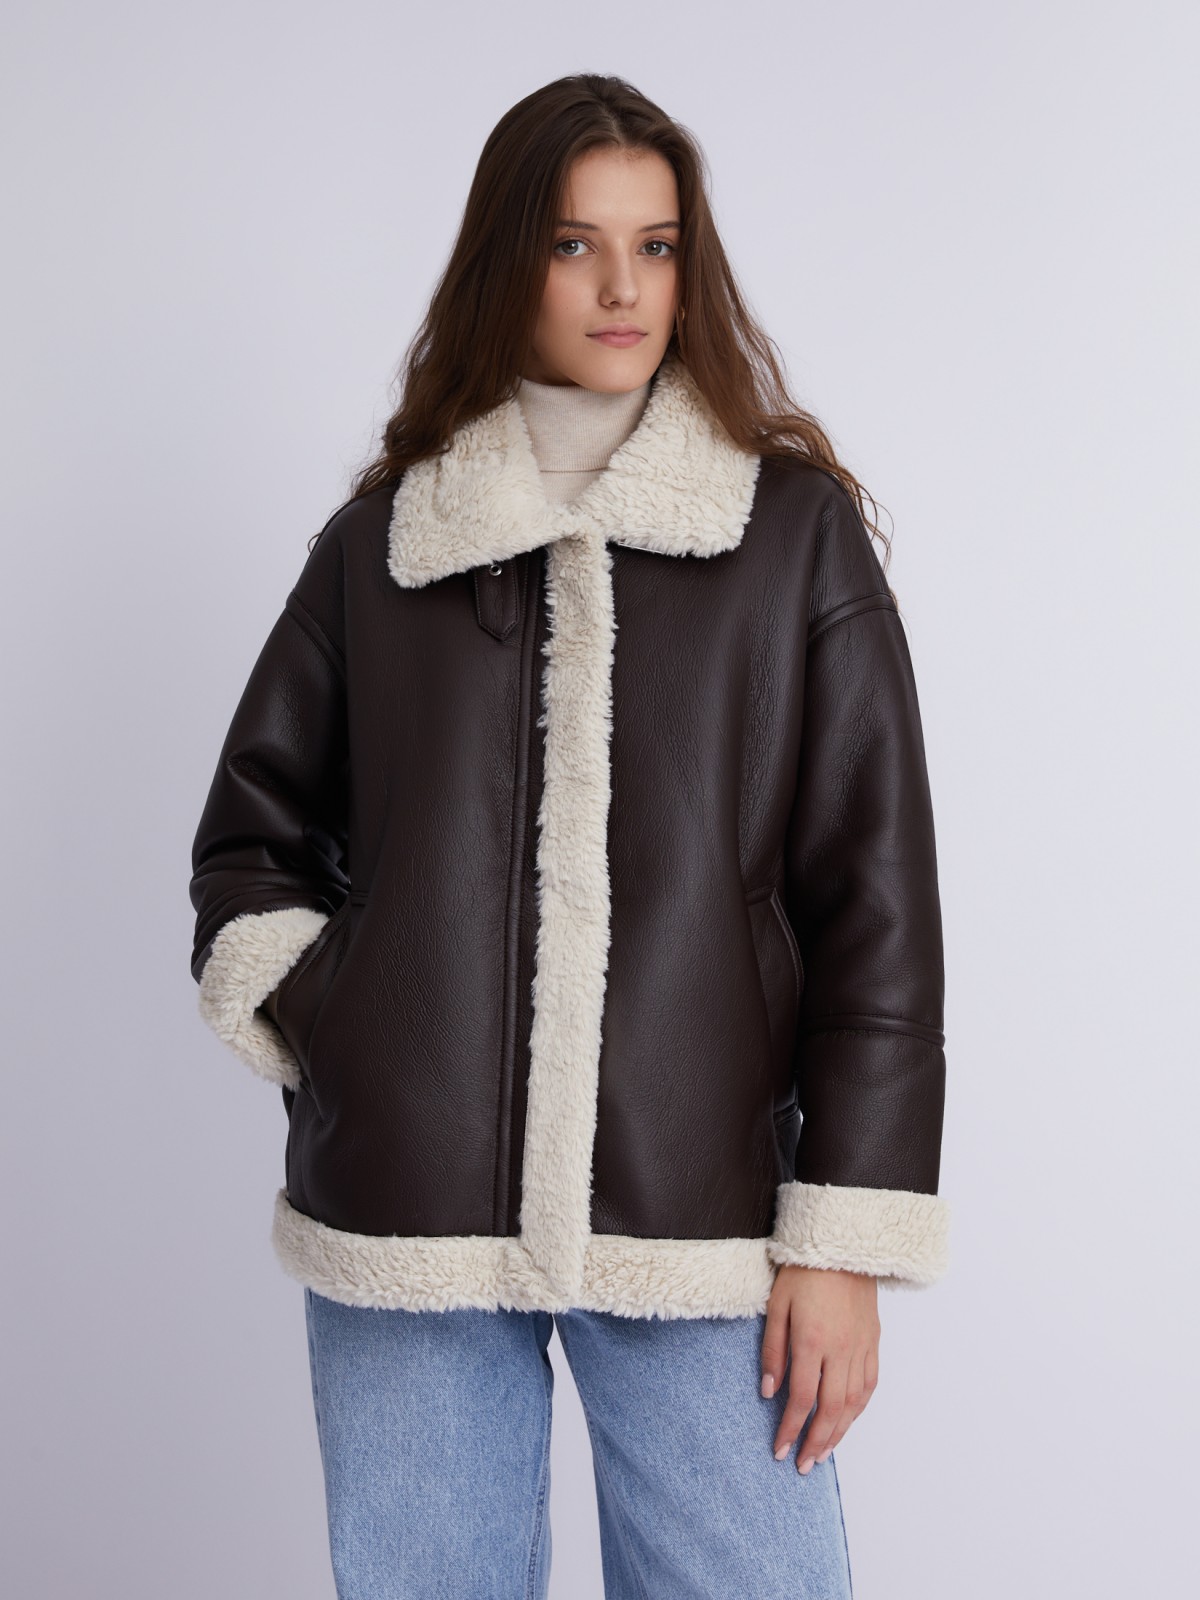 Тёплая куртка-дублёнка из экокожи с искусственным мехом по подкладке zolla 023335550124, цвет коричневый, размер XS - фото 3